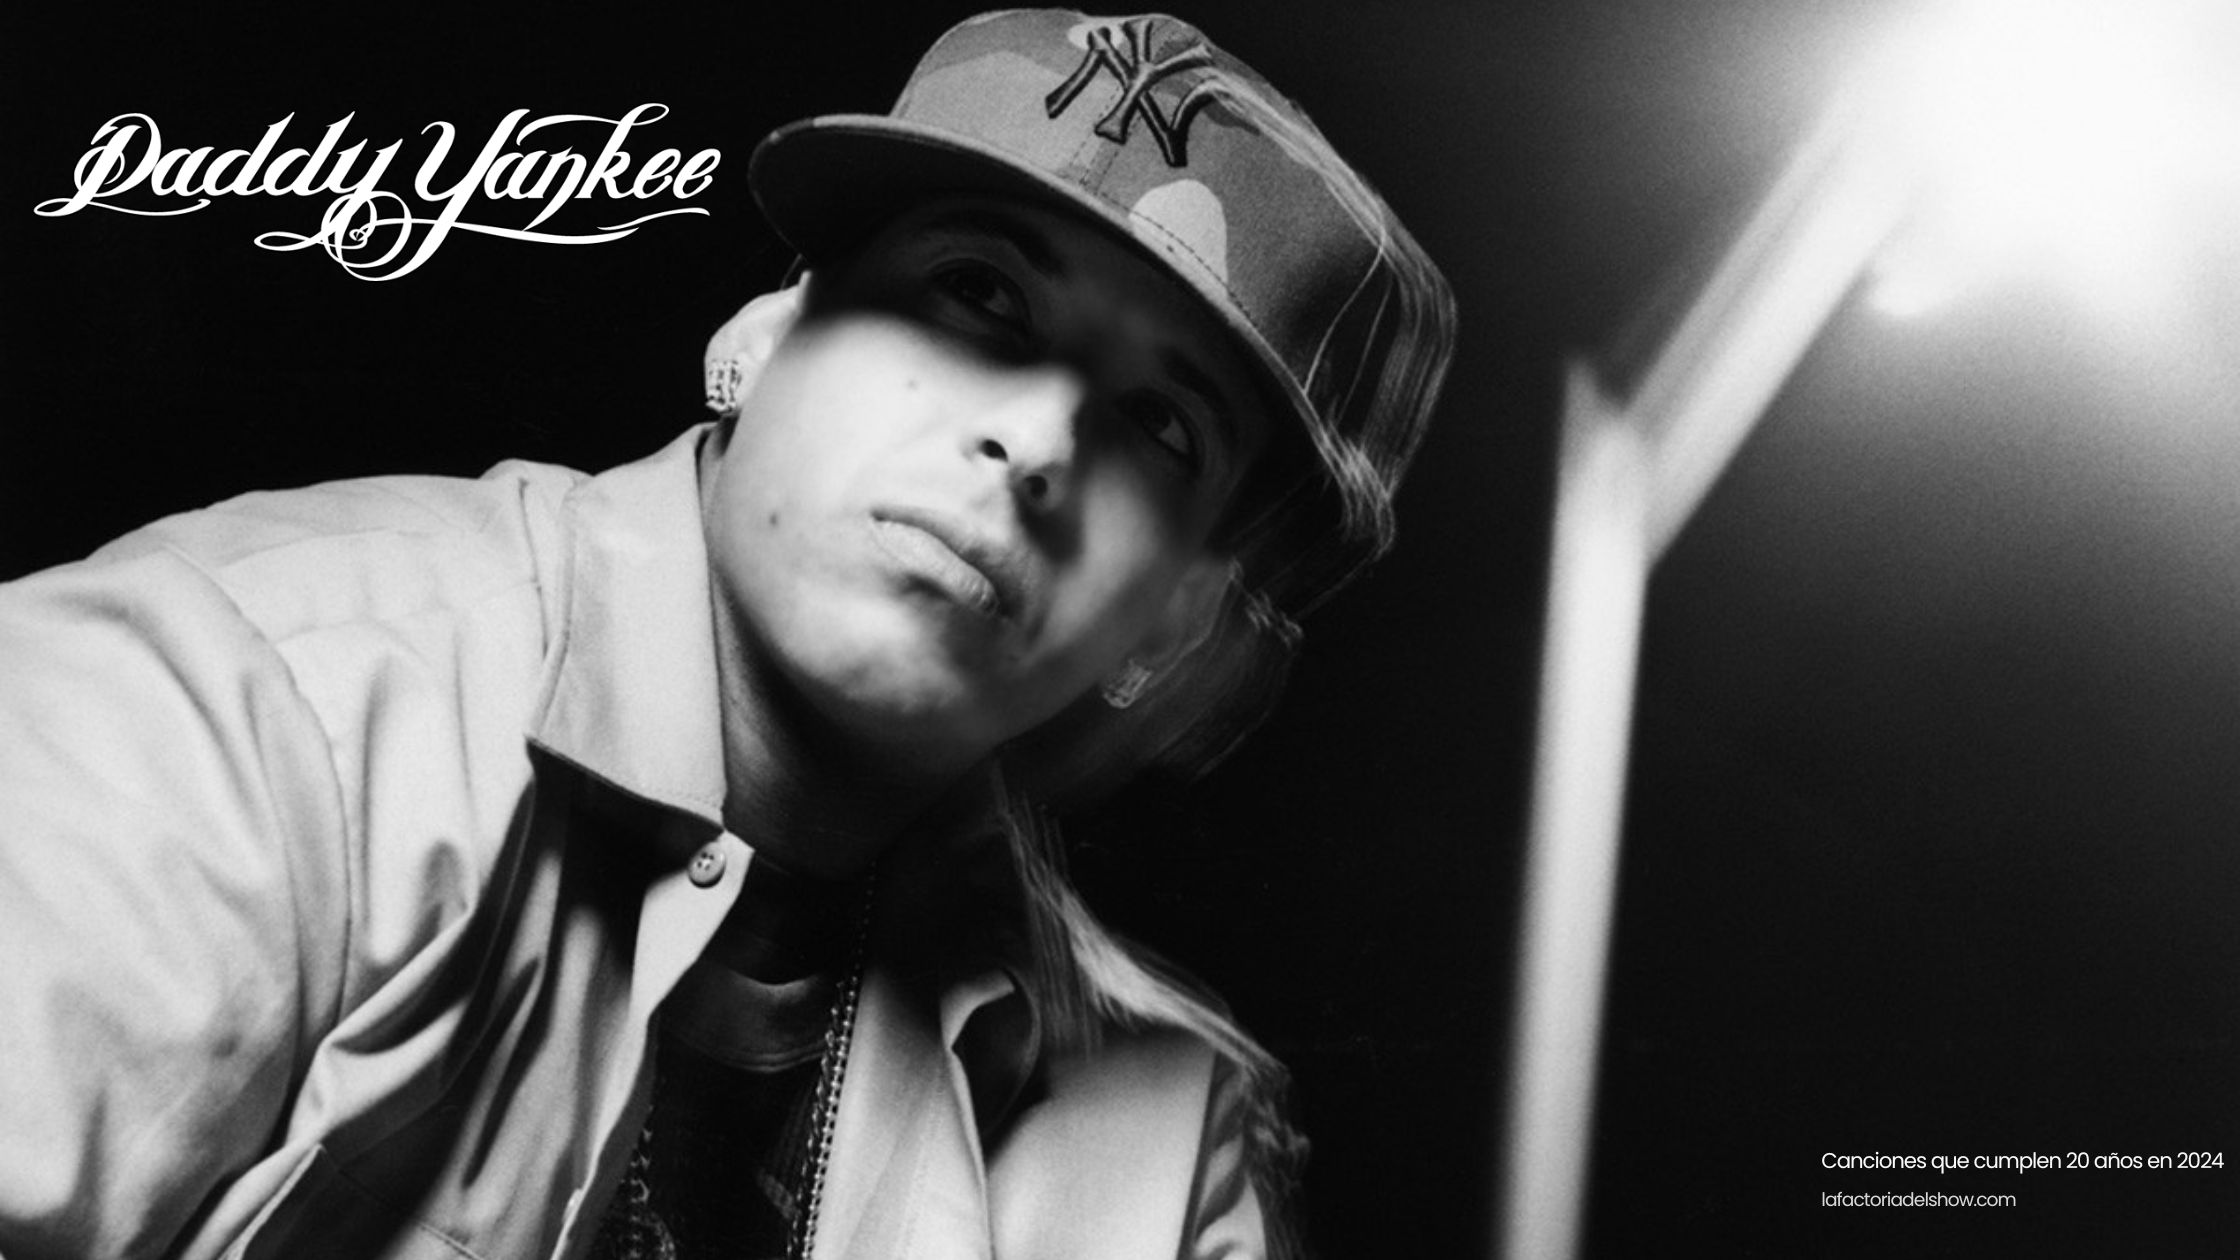 La canción Gasolina de Daddy Yankee cumple 20 años en 2024, incluida en el disco que cambió el reggaetón "Barrio Fino".